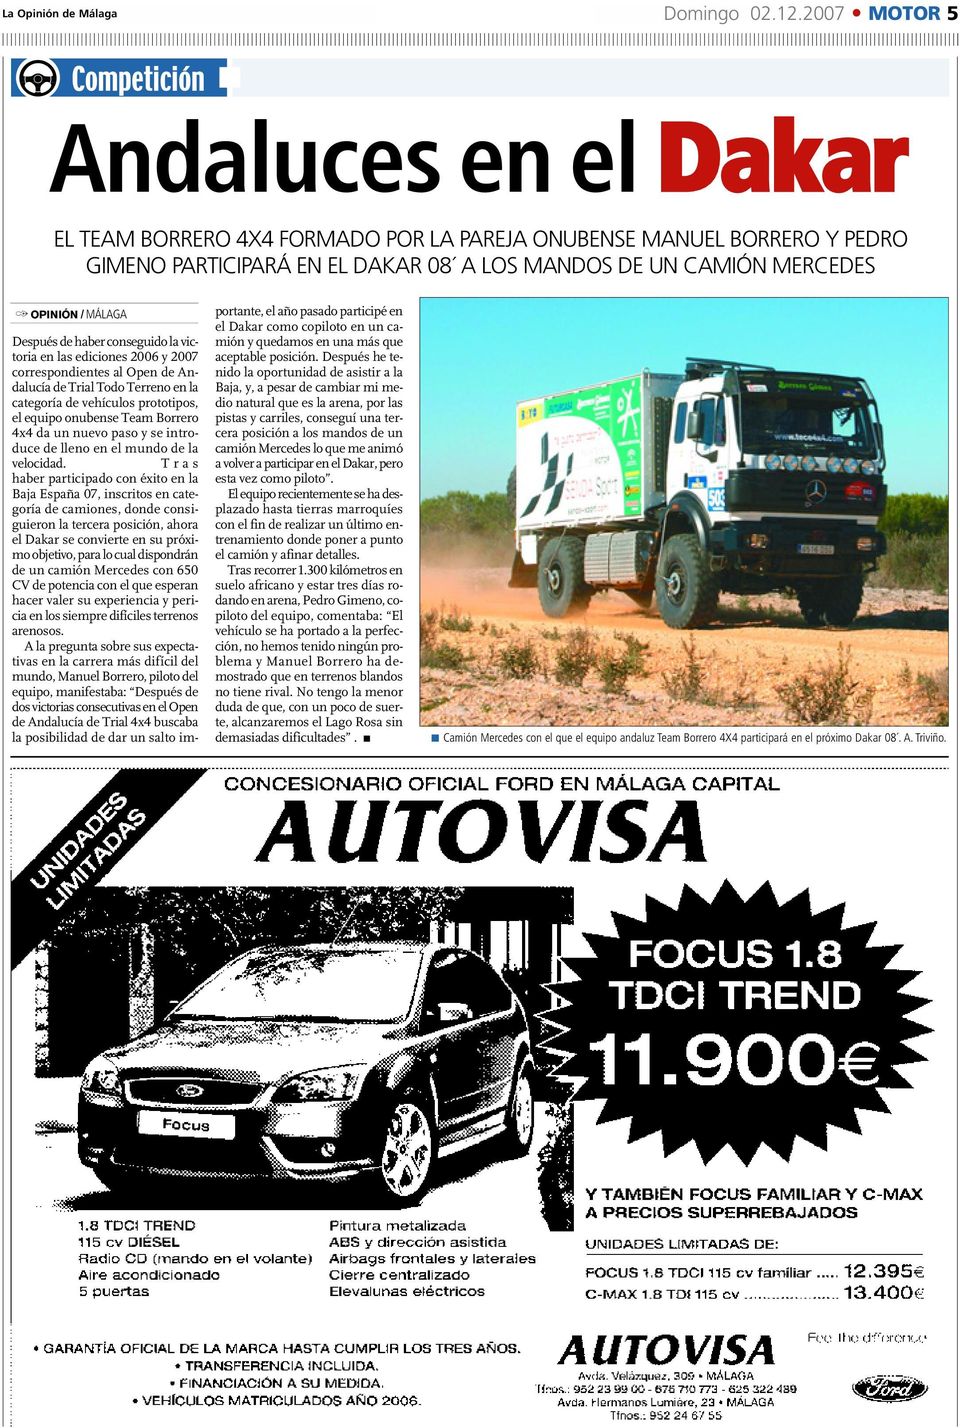 / MÁLAGA Después de haber conseguido la victoria en las ediciones 2006 y 2007 correspondientes al Open de Andalucía de Trial Todo Terreno en la categoría de vehículos prototipos, el equipo onubense